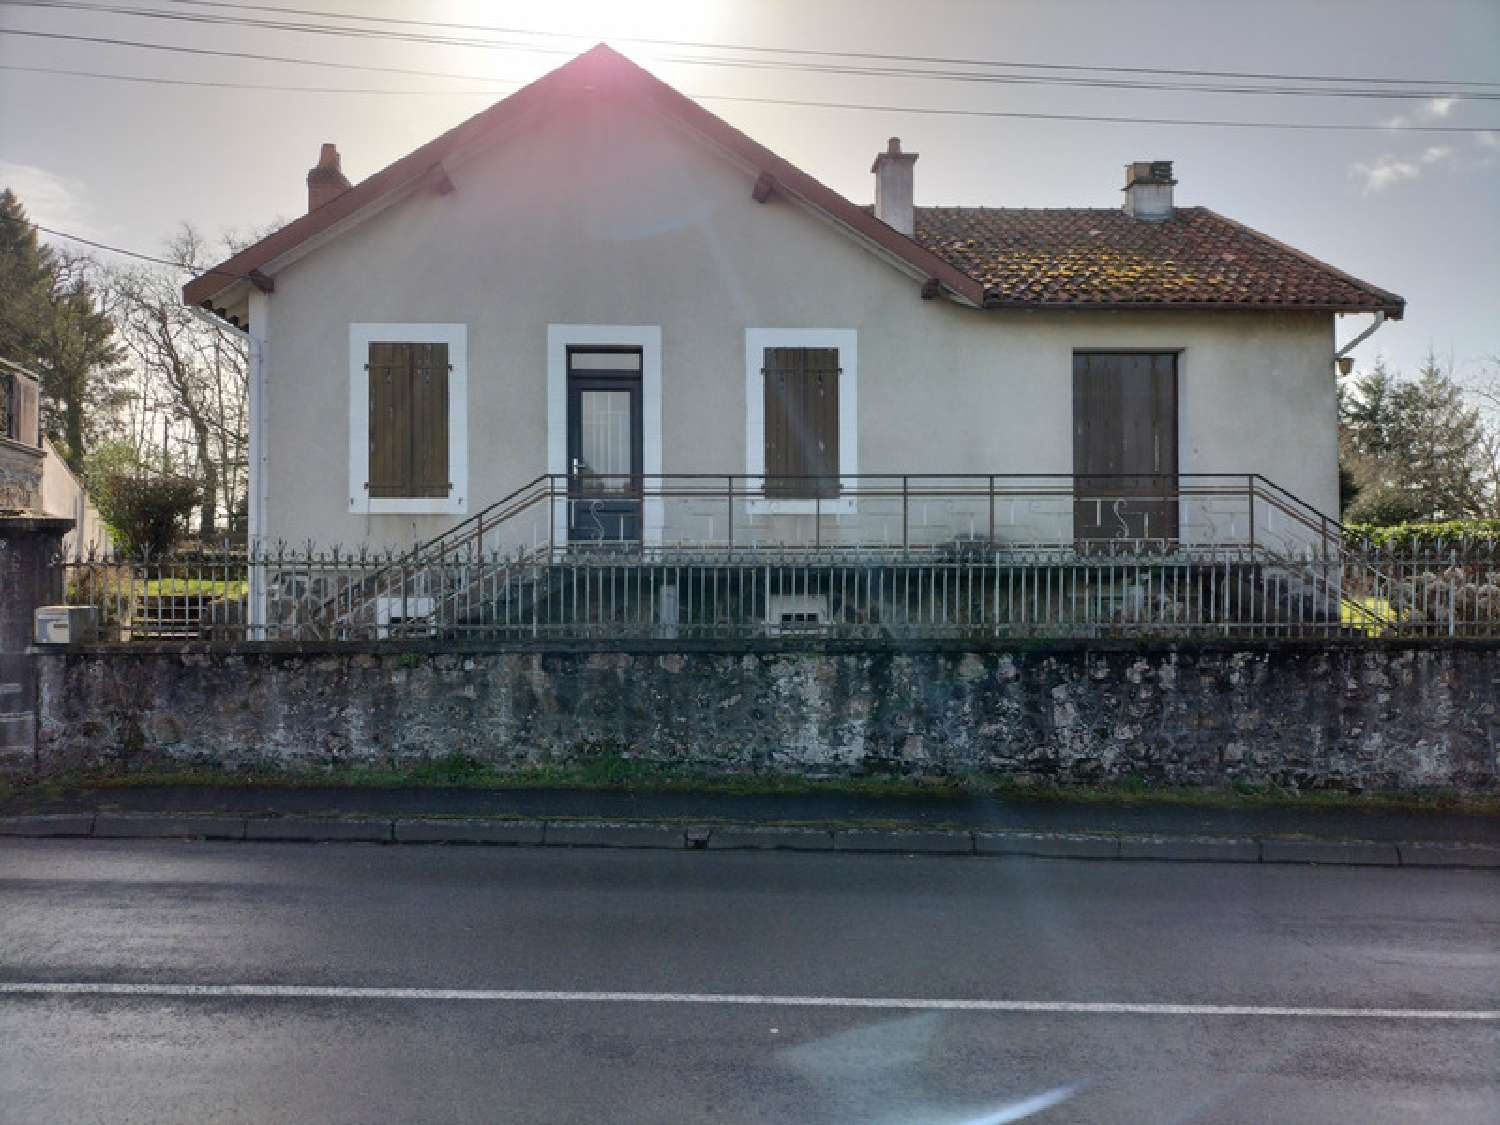  à vendre maison de village Chabanais Charente 1